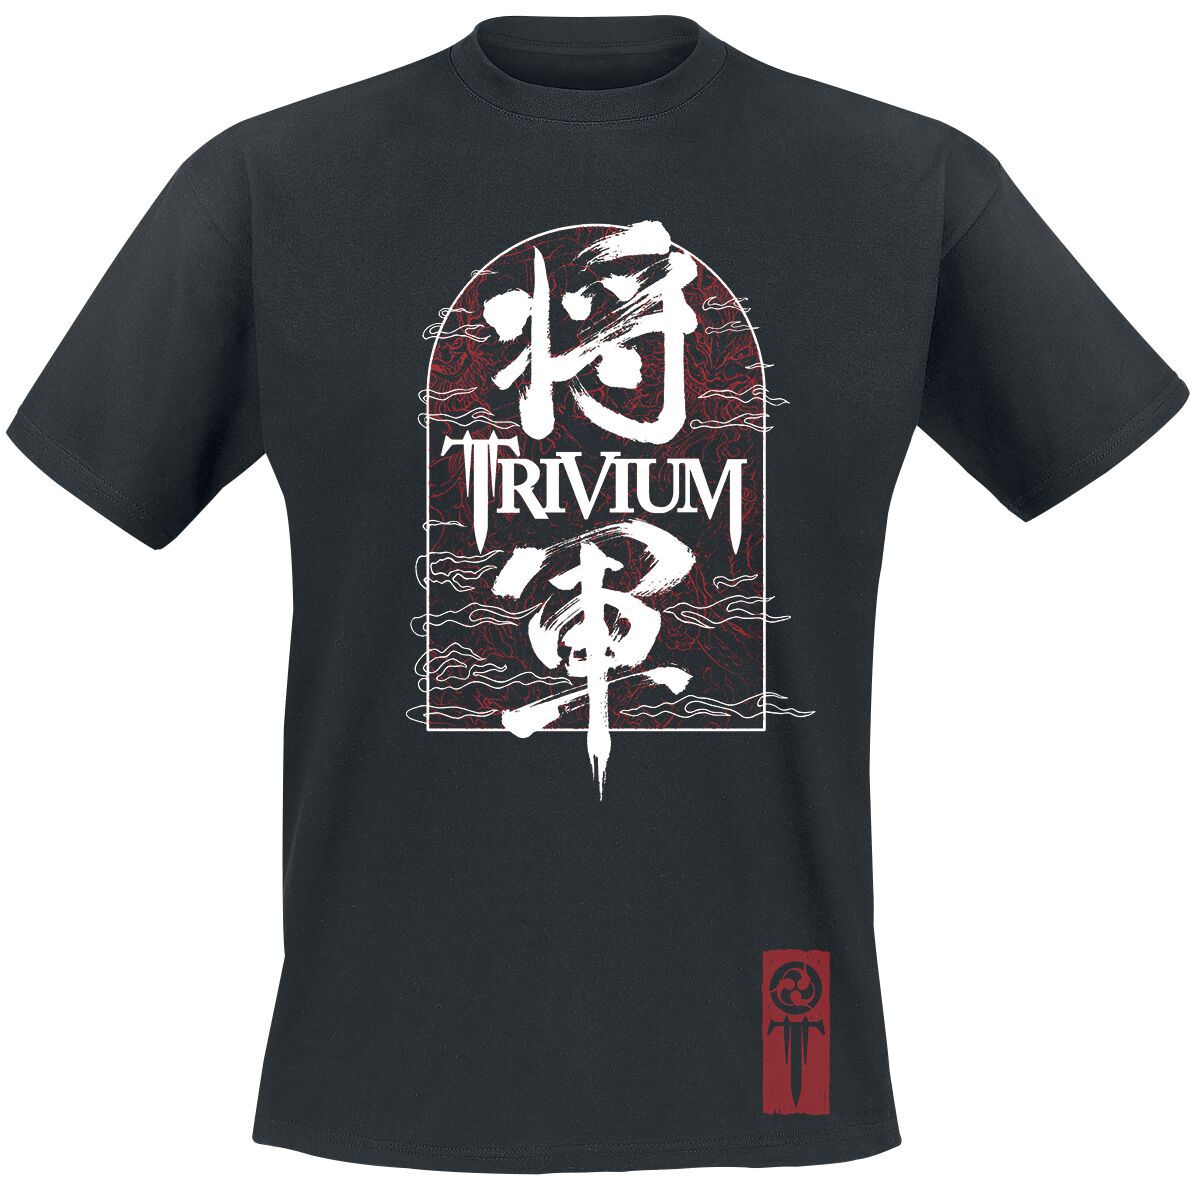 Trivium Shogun Remix T-Shirt schwarz in M